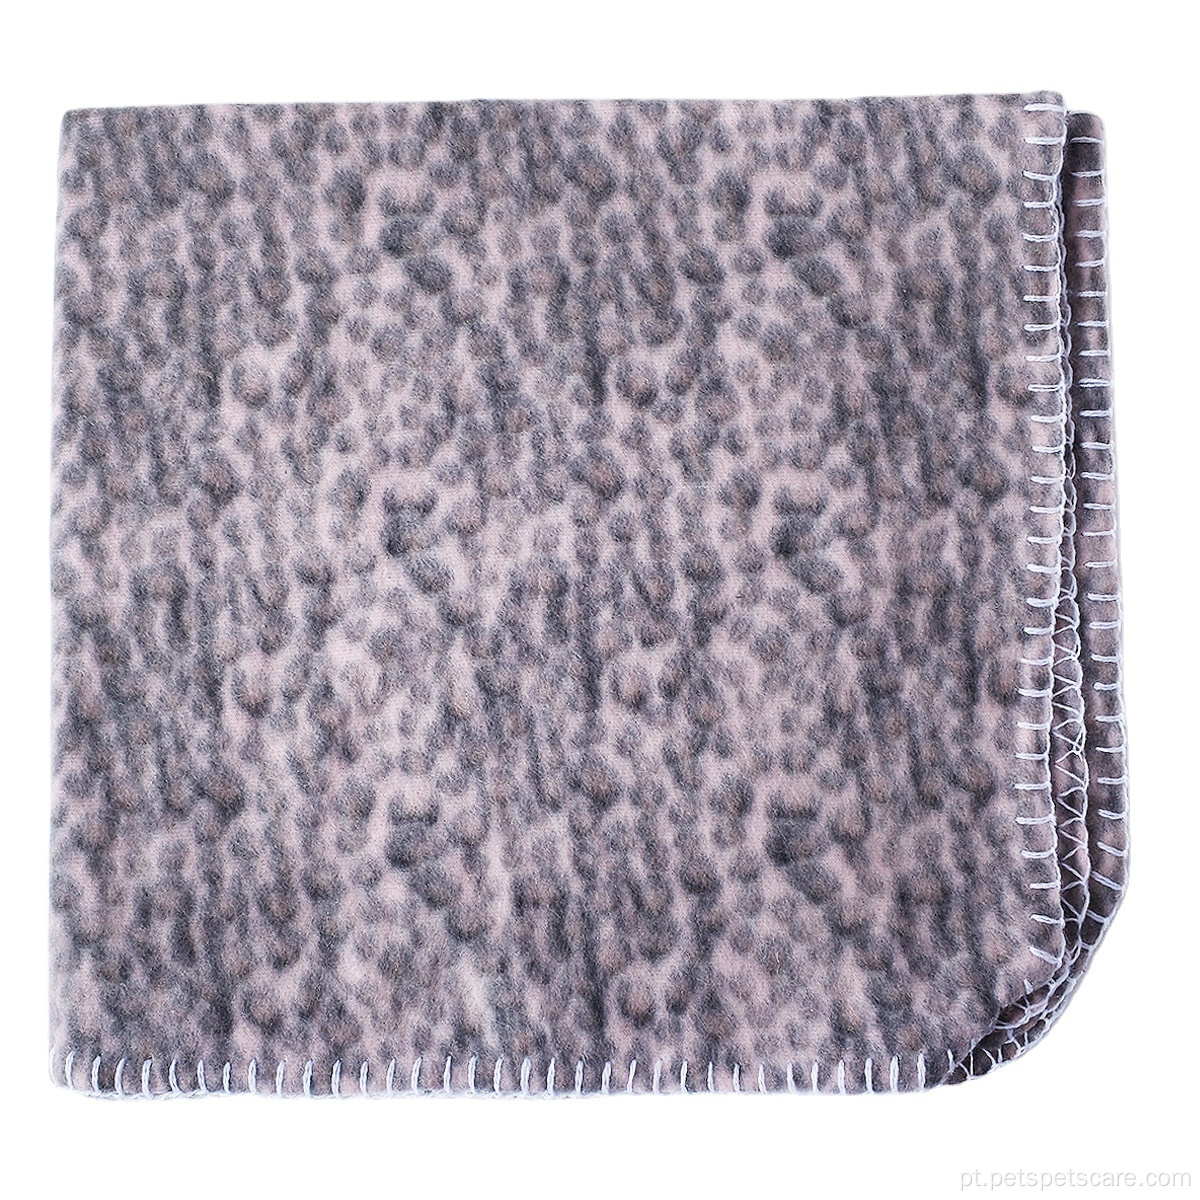 Cobertor de baixo preço para animais de estimação cobertor de lã quente e macio